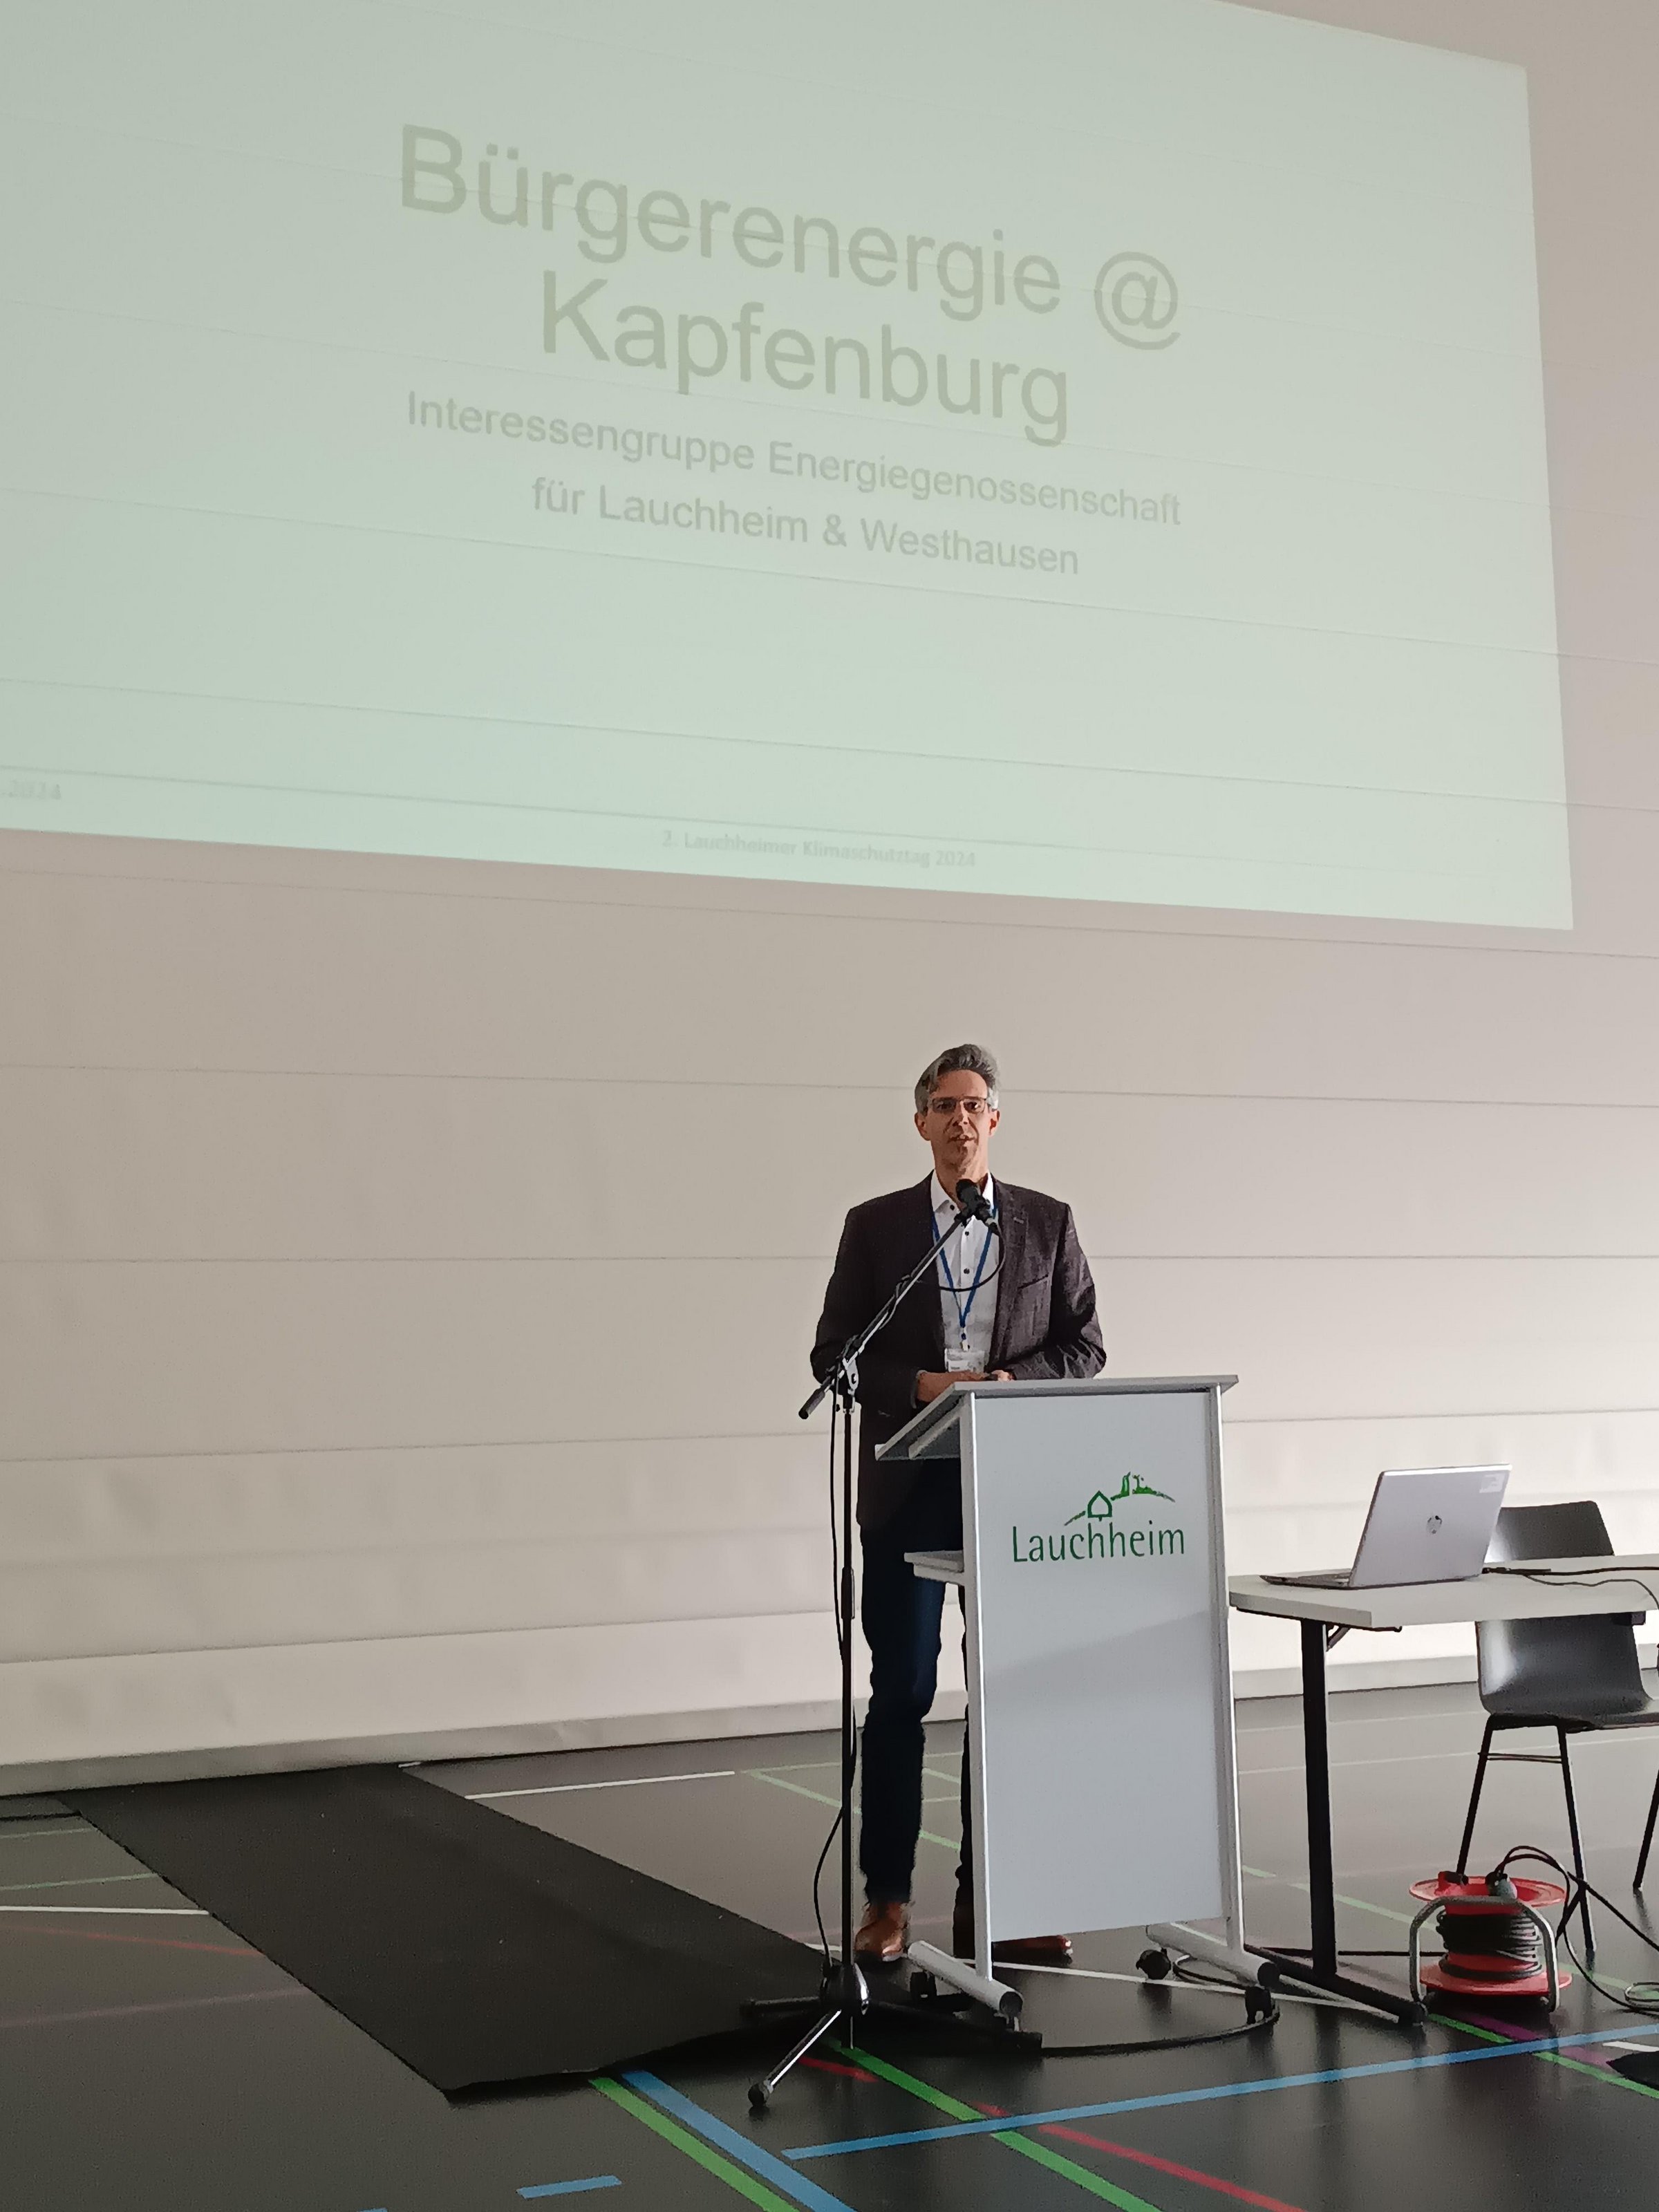 Herr Dier von der Regionalgruppe "Bürgerenergie Kapfenburg"